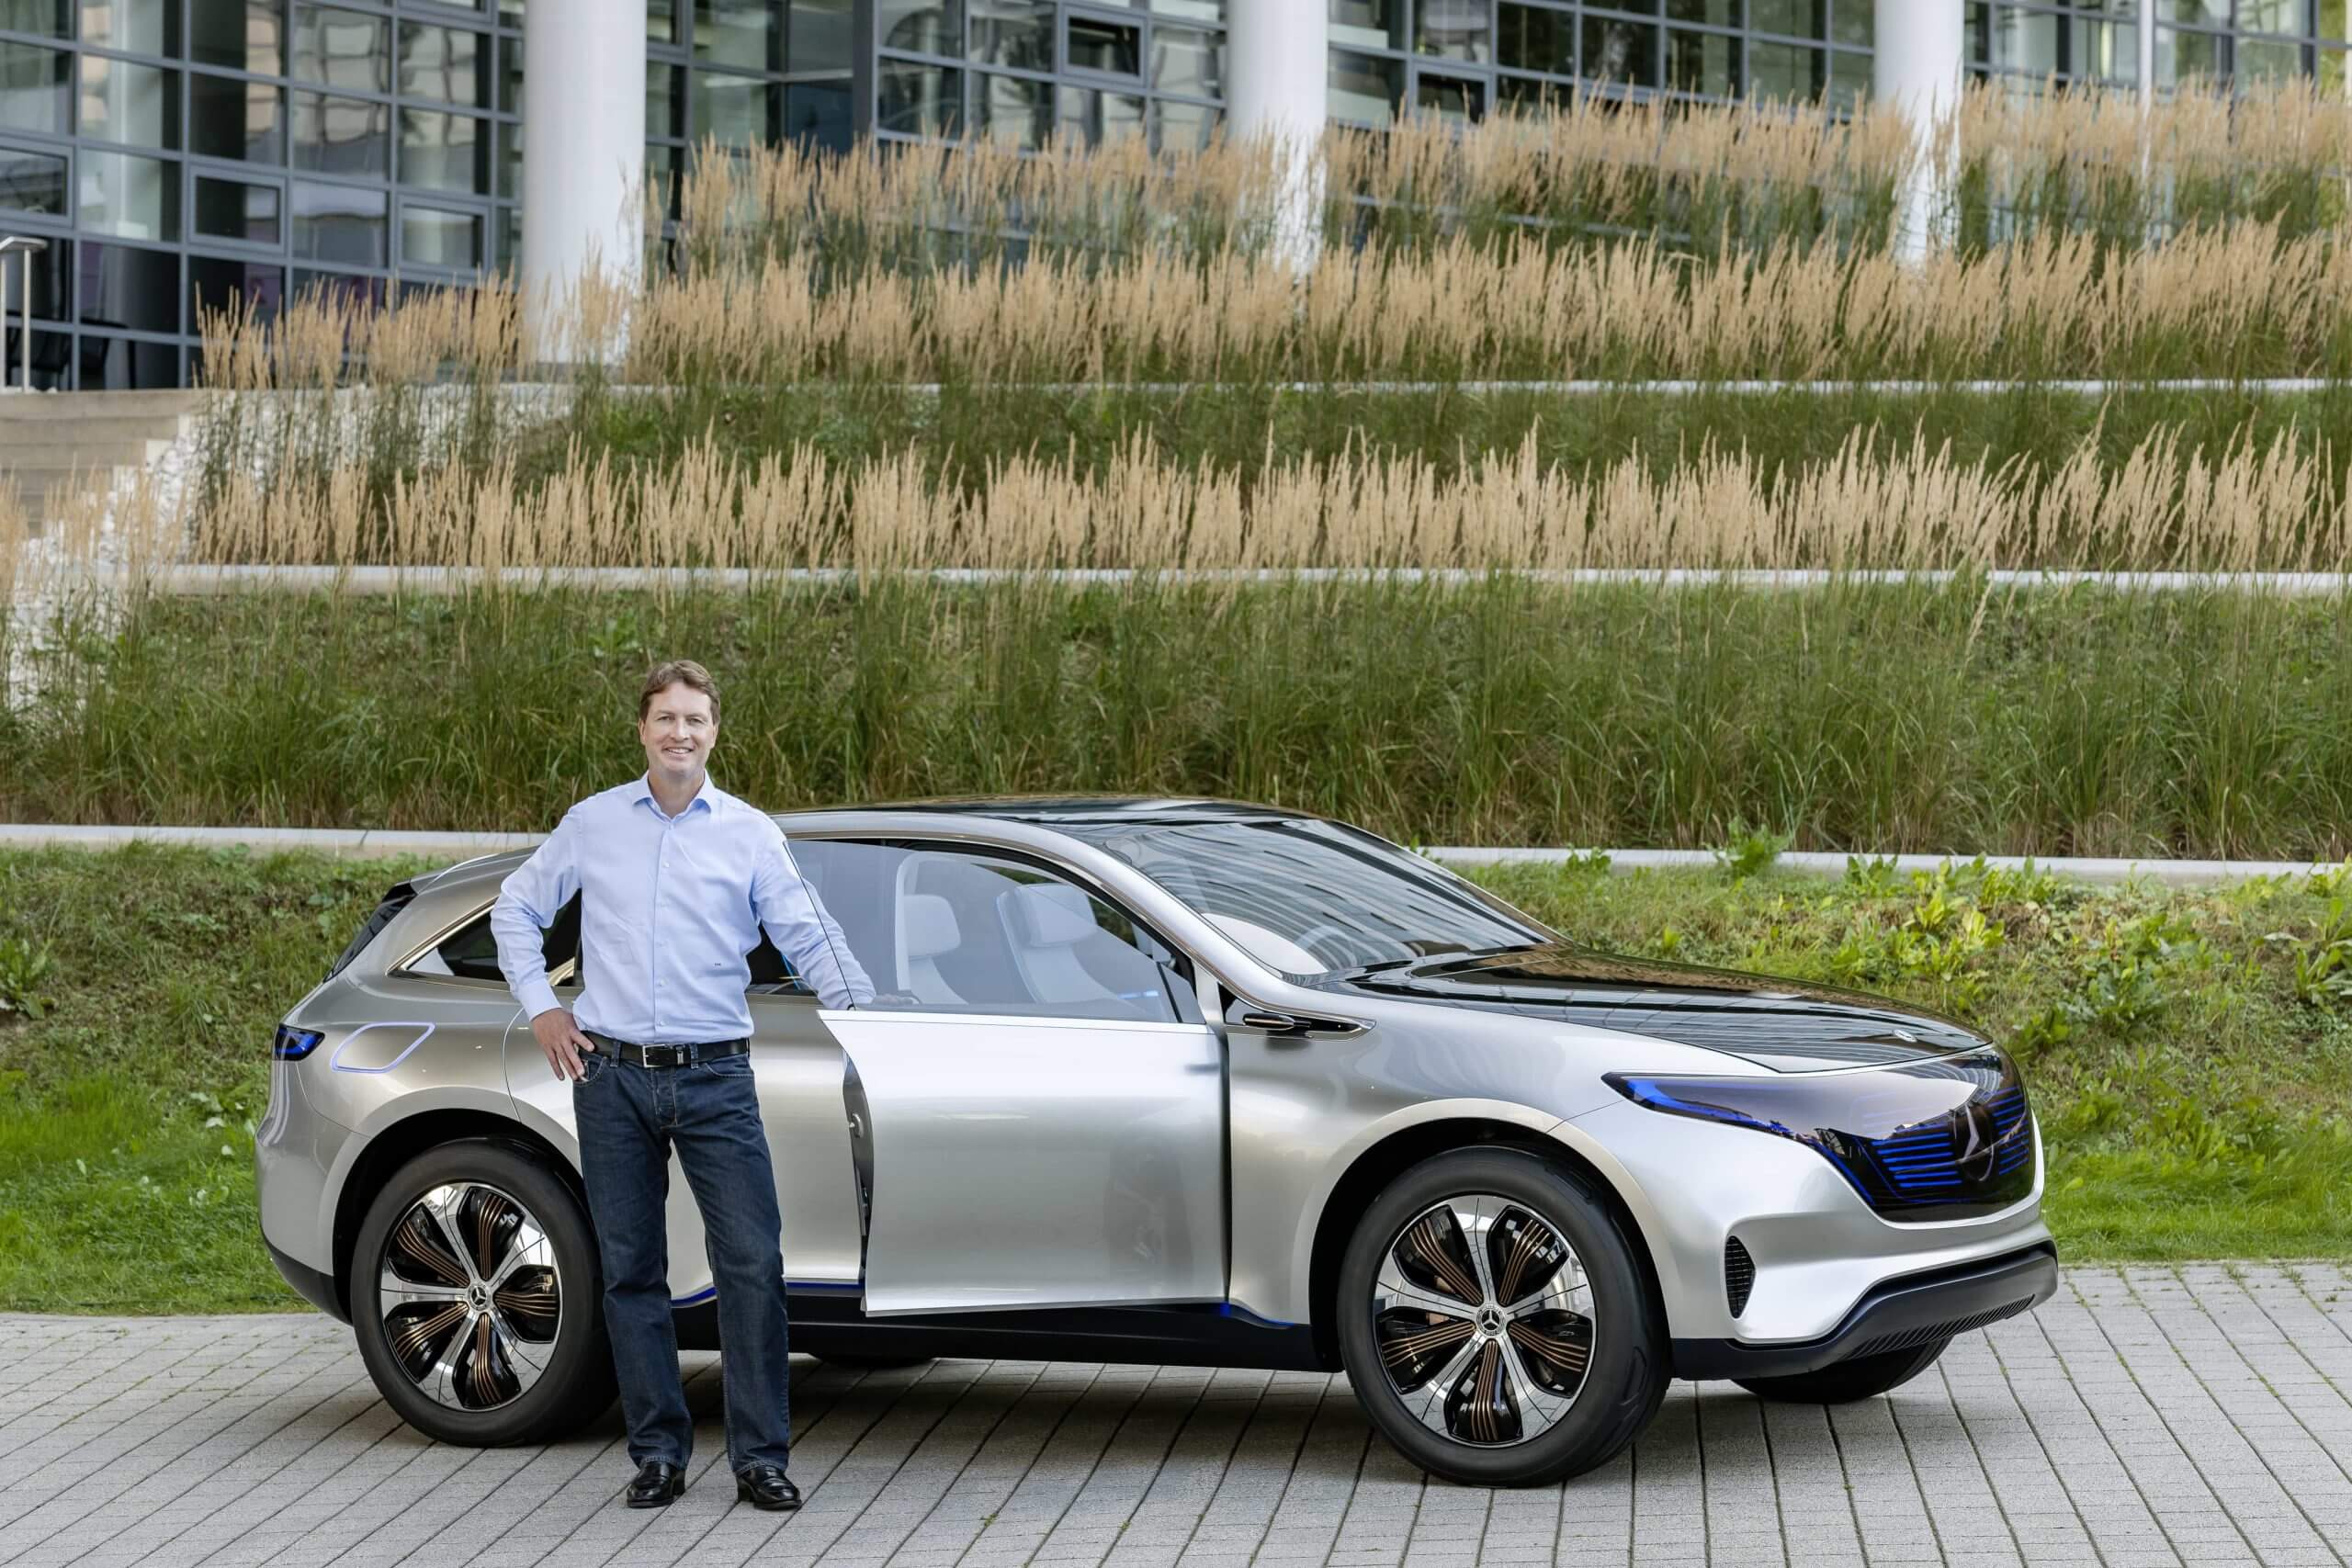 मर्सिडीज के सीईओ ईवी रणनीति पर अडिग हैं, ‘ई-ईंधन’ तकनीक का खंडन करते हैं